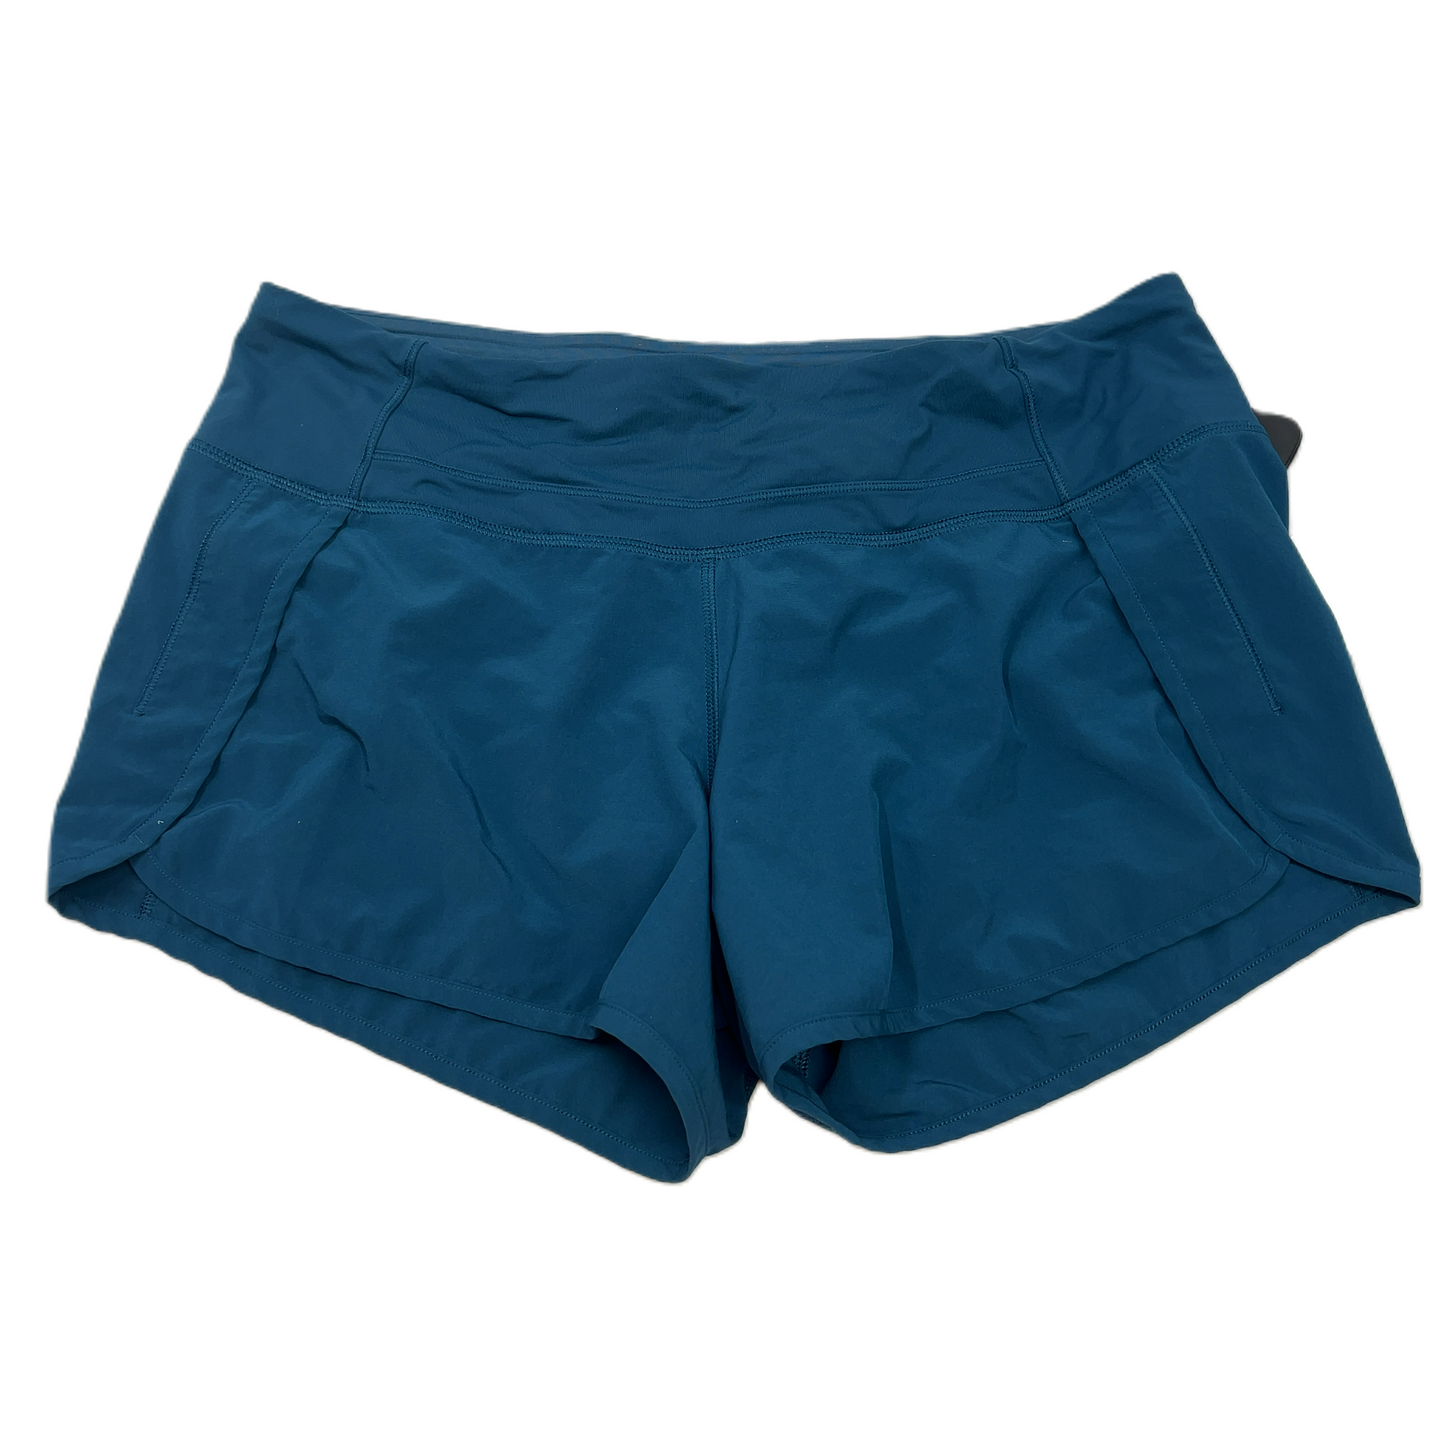 Blue  Athletic Shorts By Lululemon  Size: M